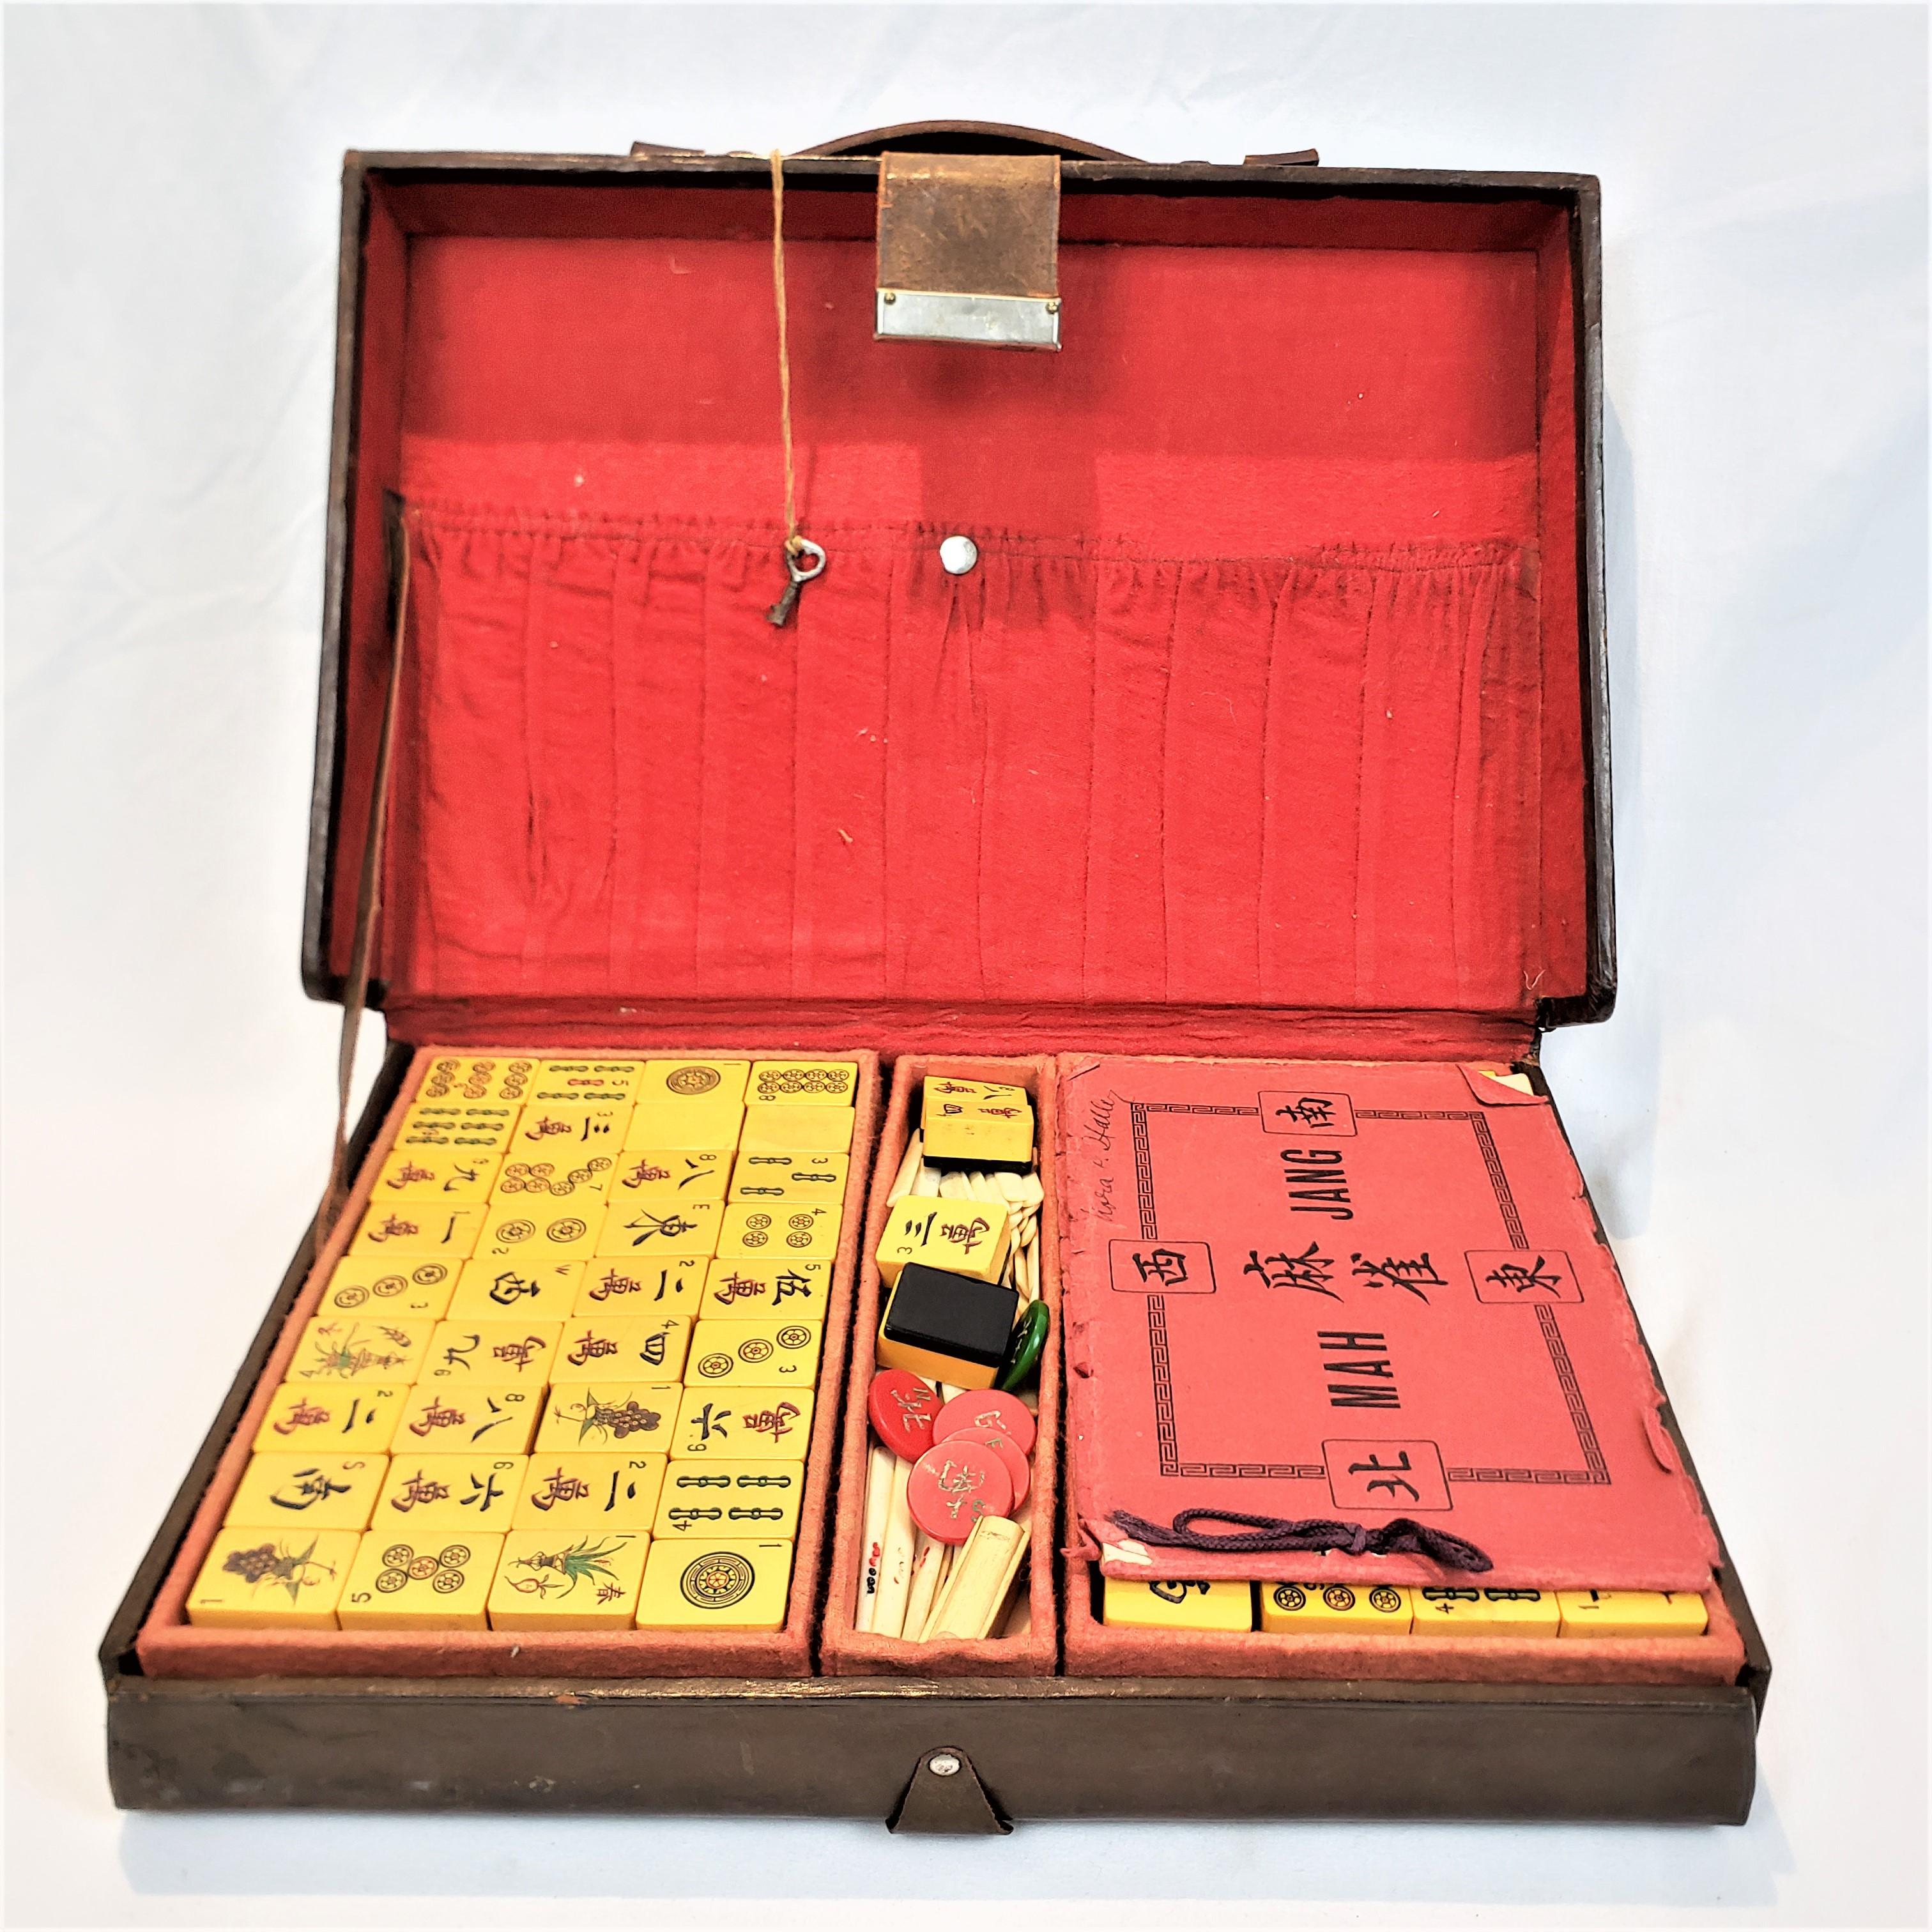 Ce jeu de mahjong ancien est supposé provenir de Chine et dater d'environ 1900. Il a été réalisé dans le style chinois d'exportation. Les carreaux sont composés d'une bakélite caramel et de certains dos noirs, avec des détails gravés et peints à la